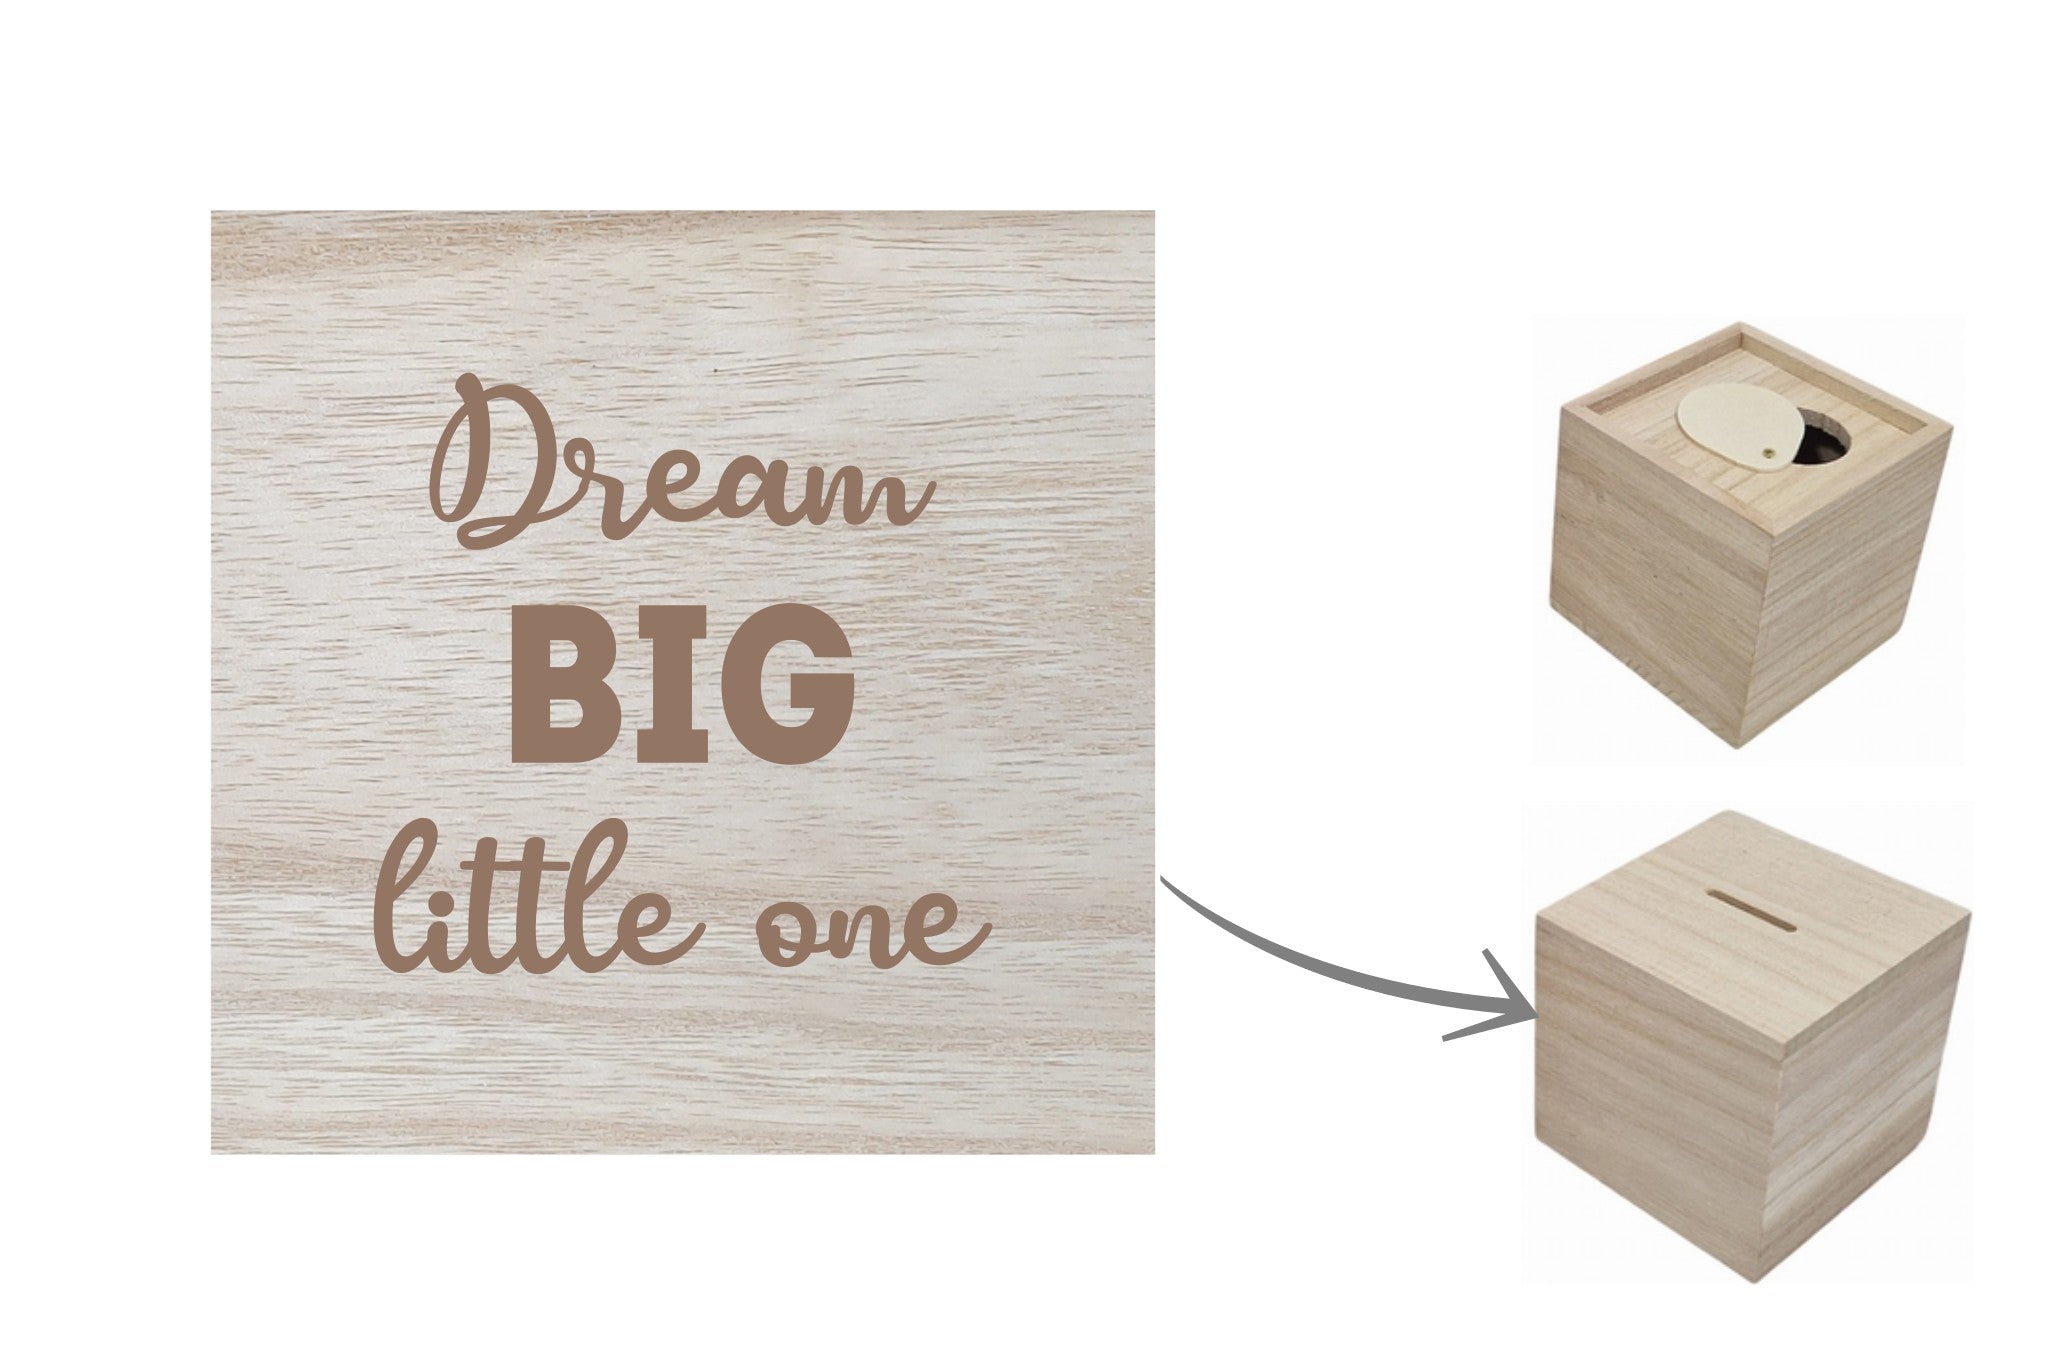 Houten spaarpot met gravure met inspirerende quote 'Dream big little one'